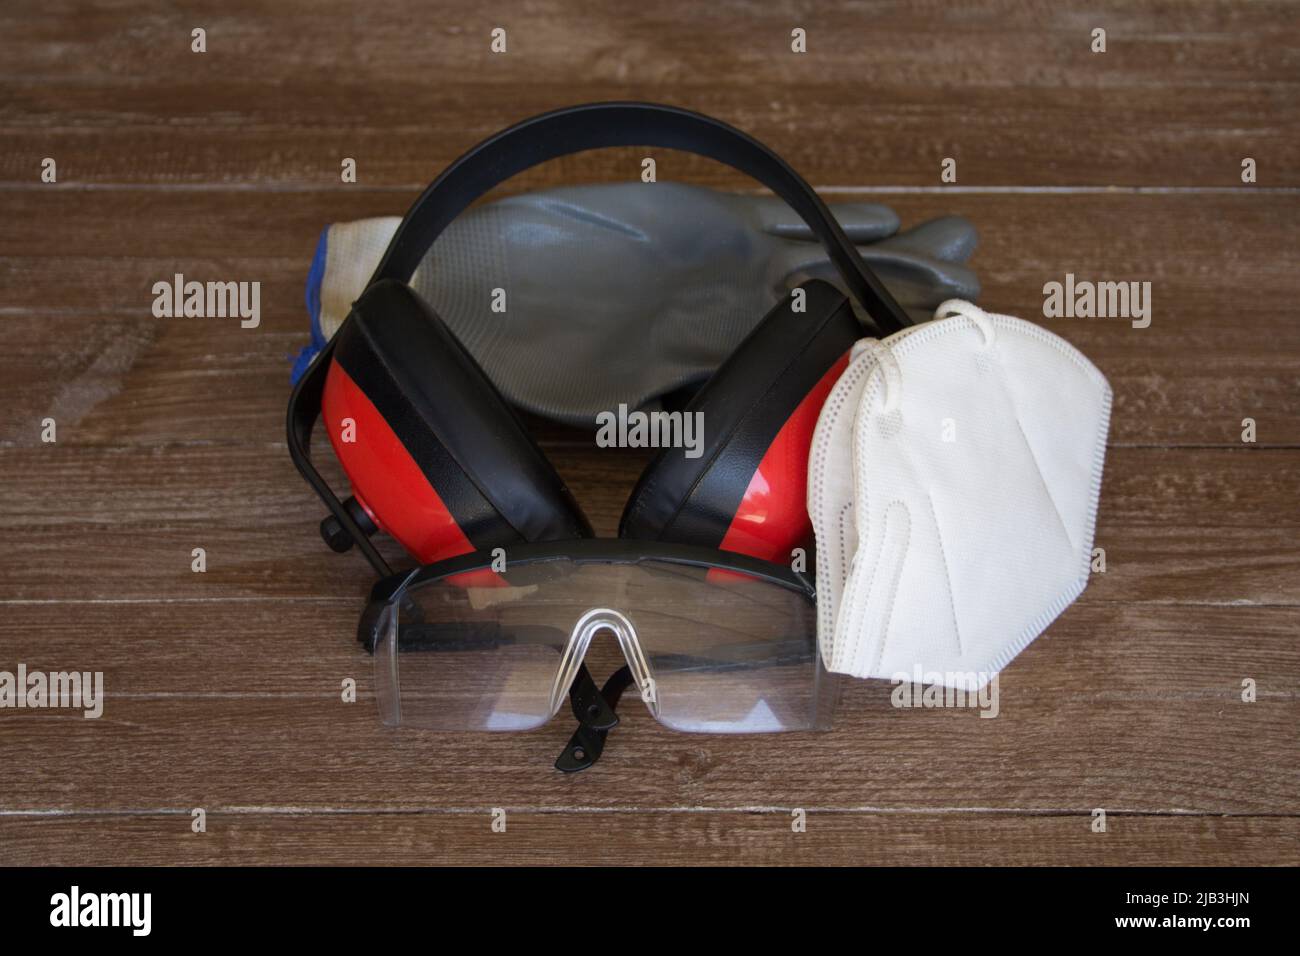 Abbildung von Handschuhen, Schutzbrillen, Kopfhörern und Maske Darstellung der persönlichen Schutzausrüstung, die am Arbeitsplatz verwendet werden soll Stockfoto